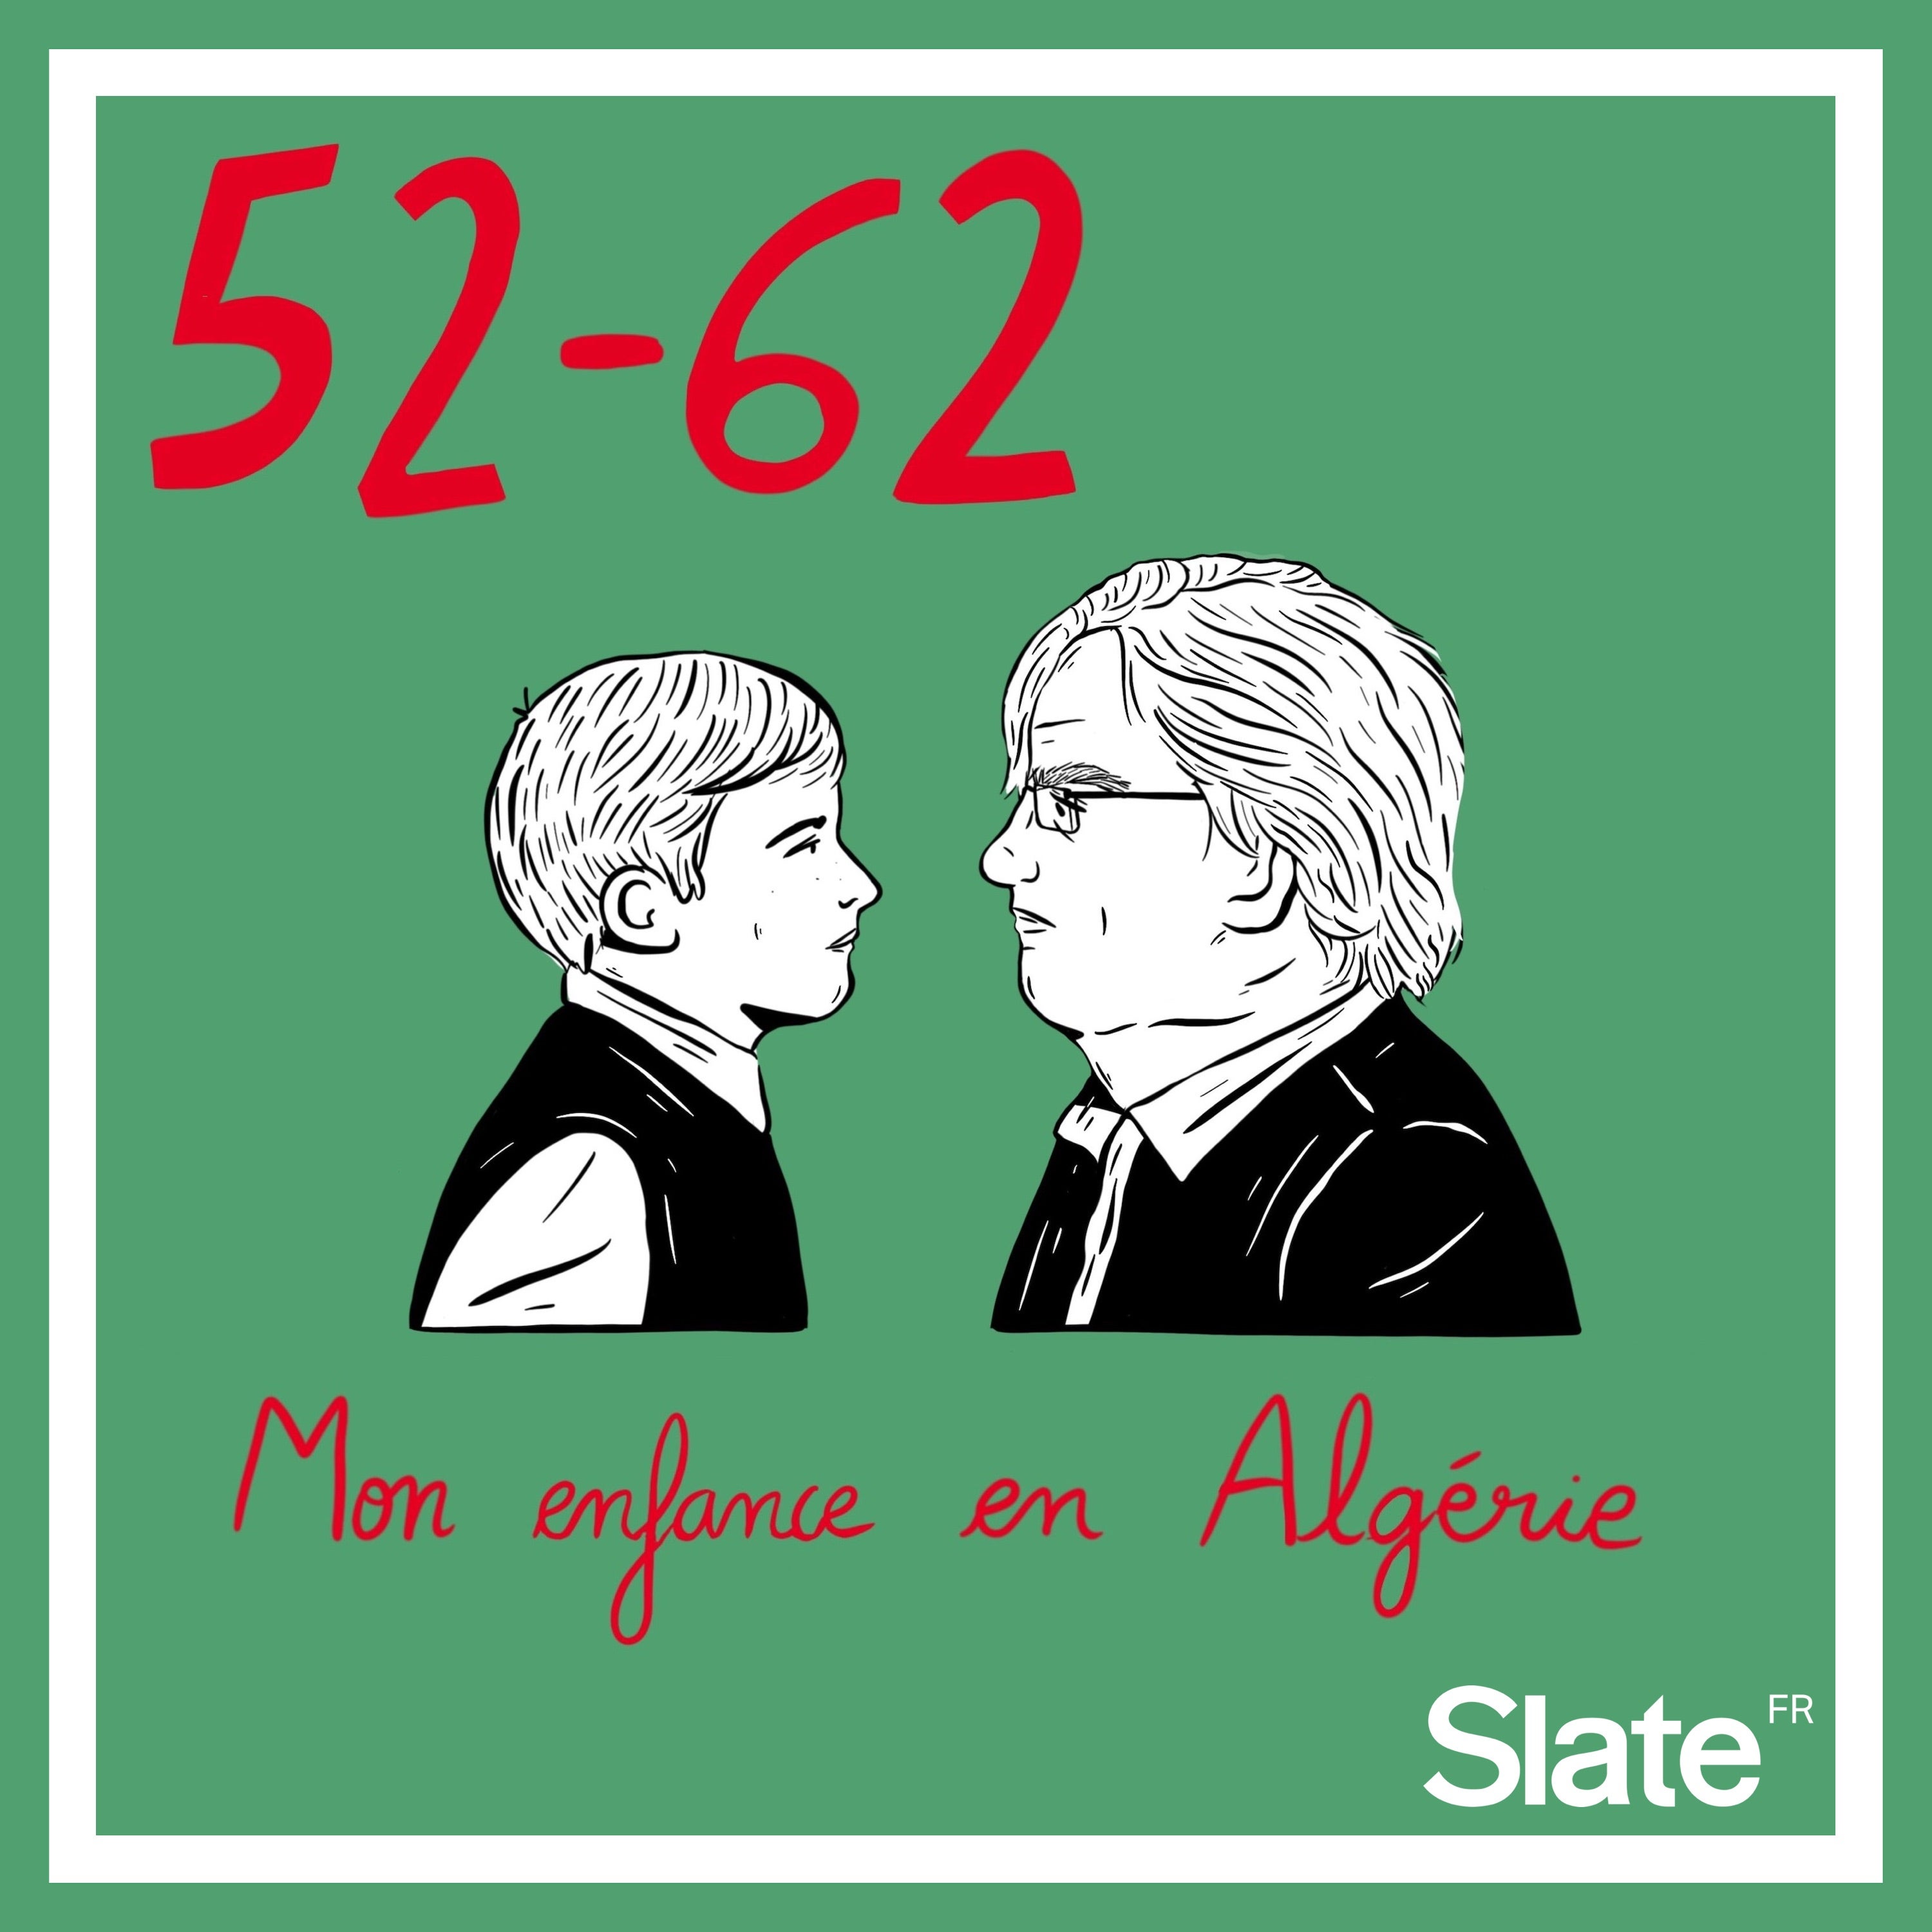 52-62, mon enfance en Algérie 5/5: Le toucher: «Ma mère nous pinçait les joues pour vérifier qu'on était toujours vivants»